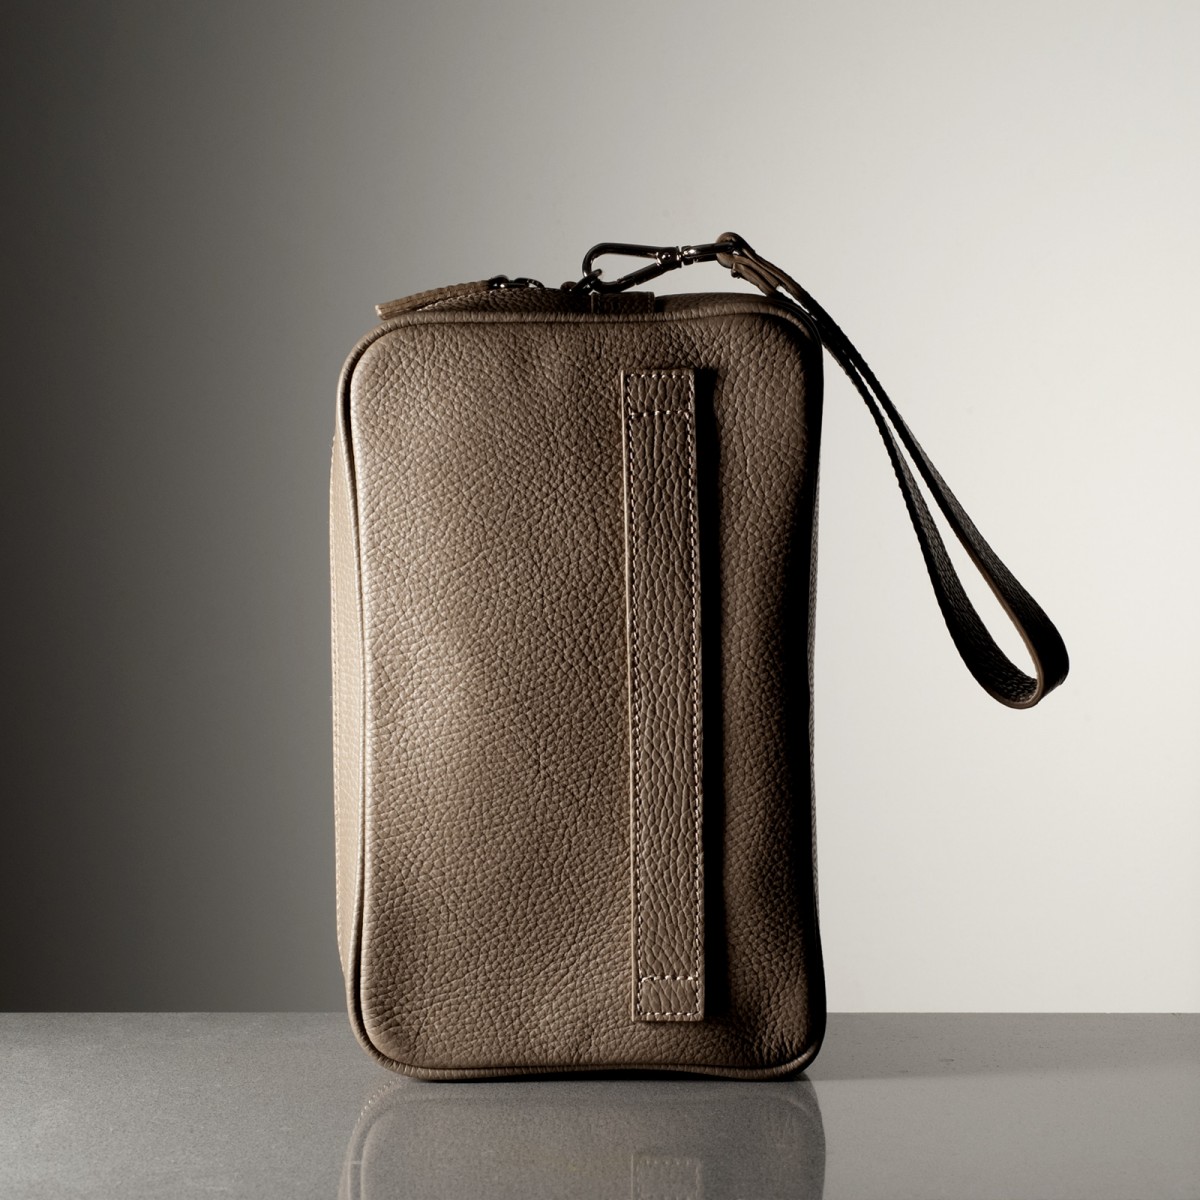 STEVE - Bull leather backpack, handmade in Italy